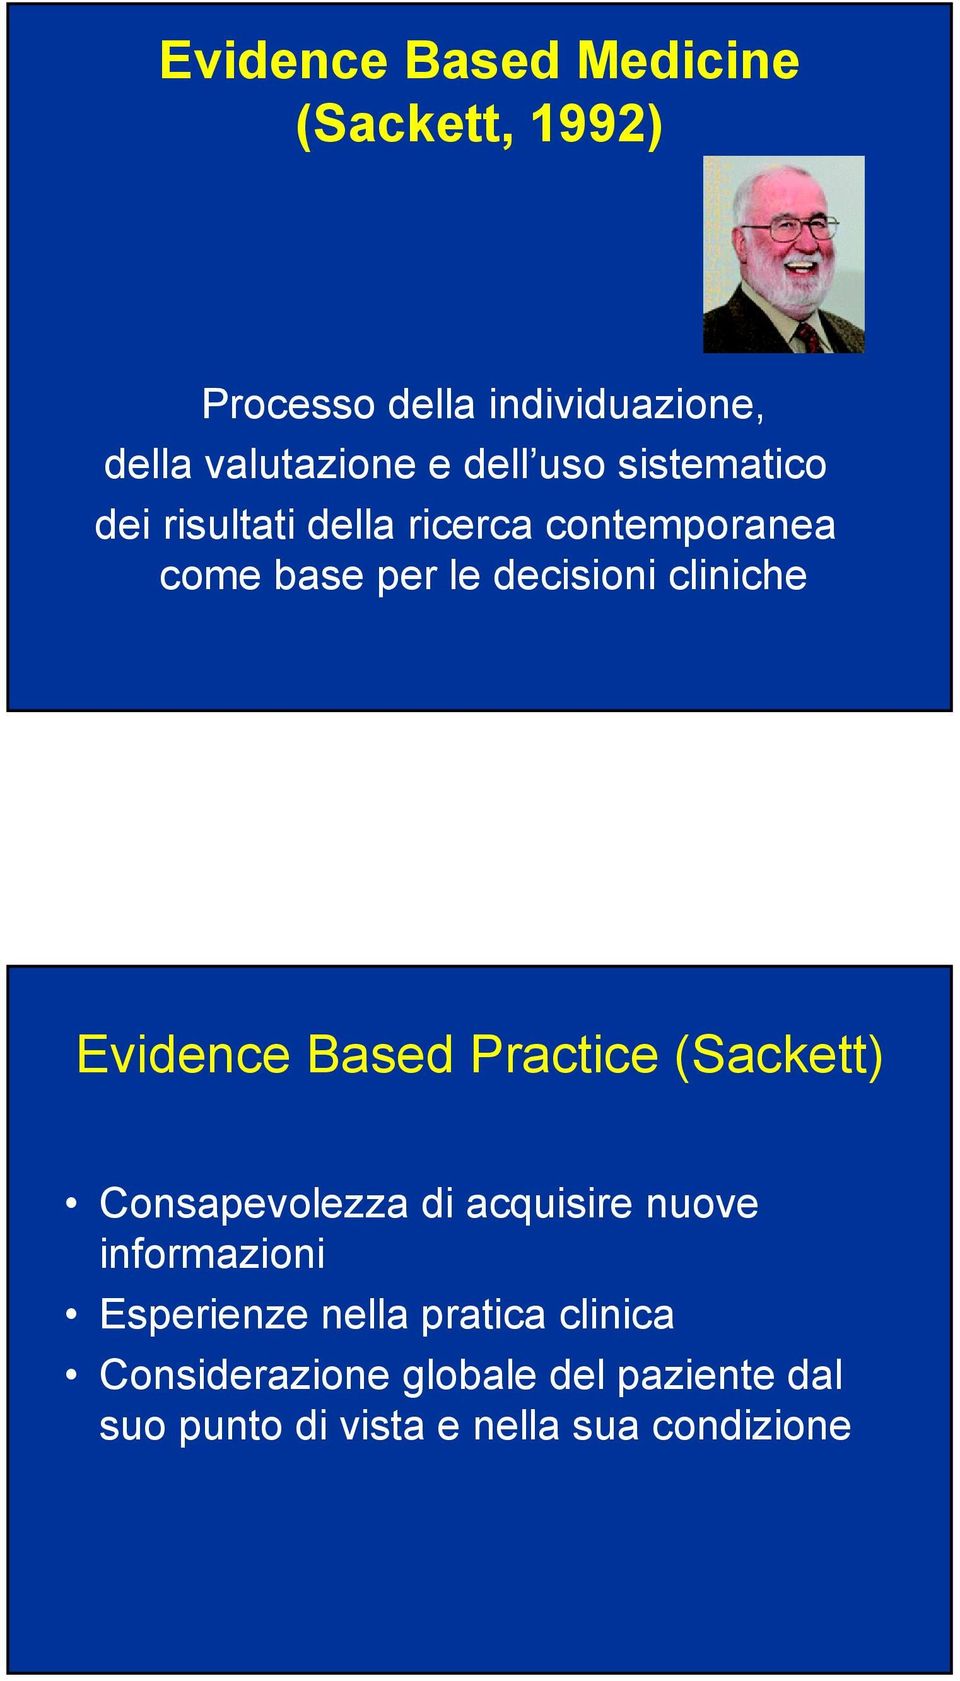 Evidence Based Practice (Sackett) Consapevolezza di acquisire nuove informazioni Esperienze